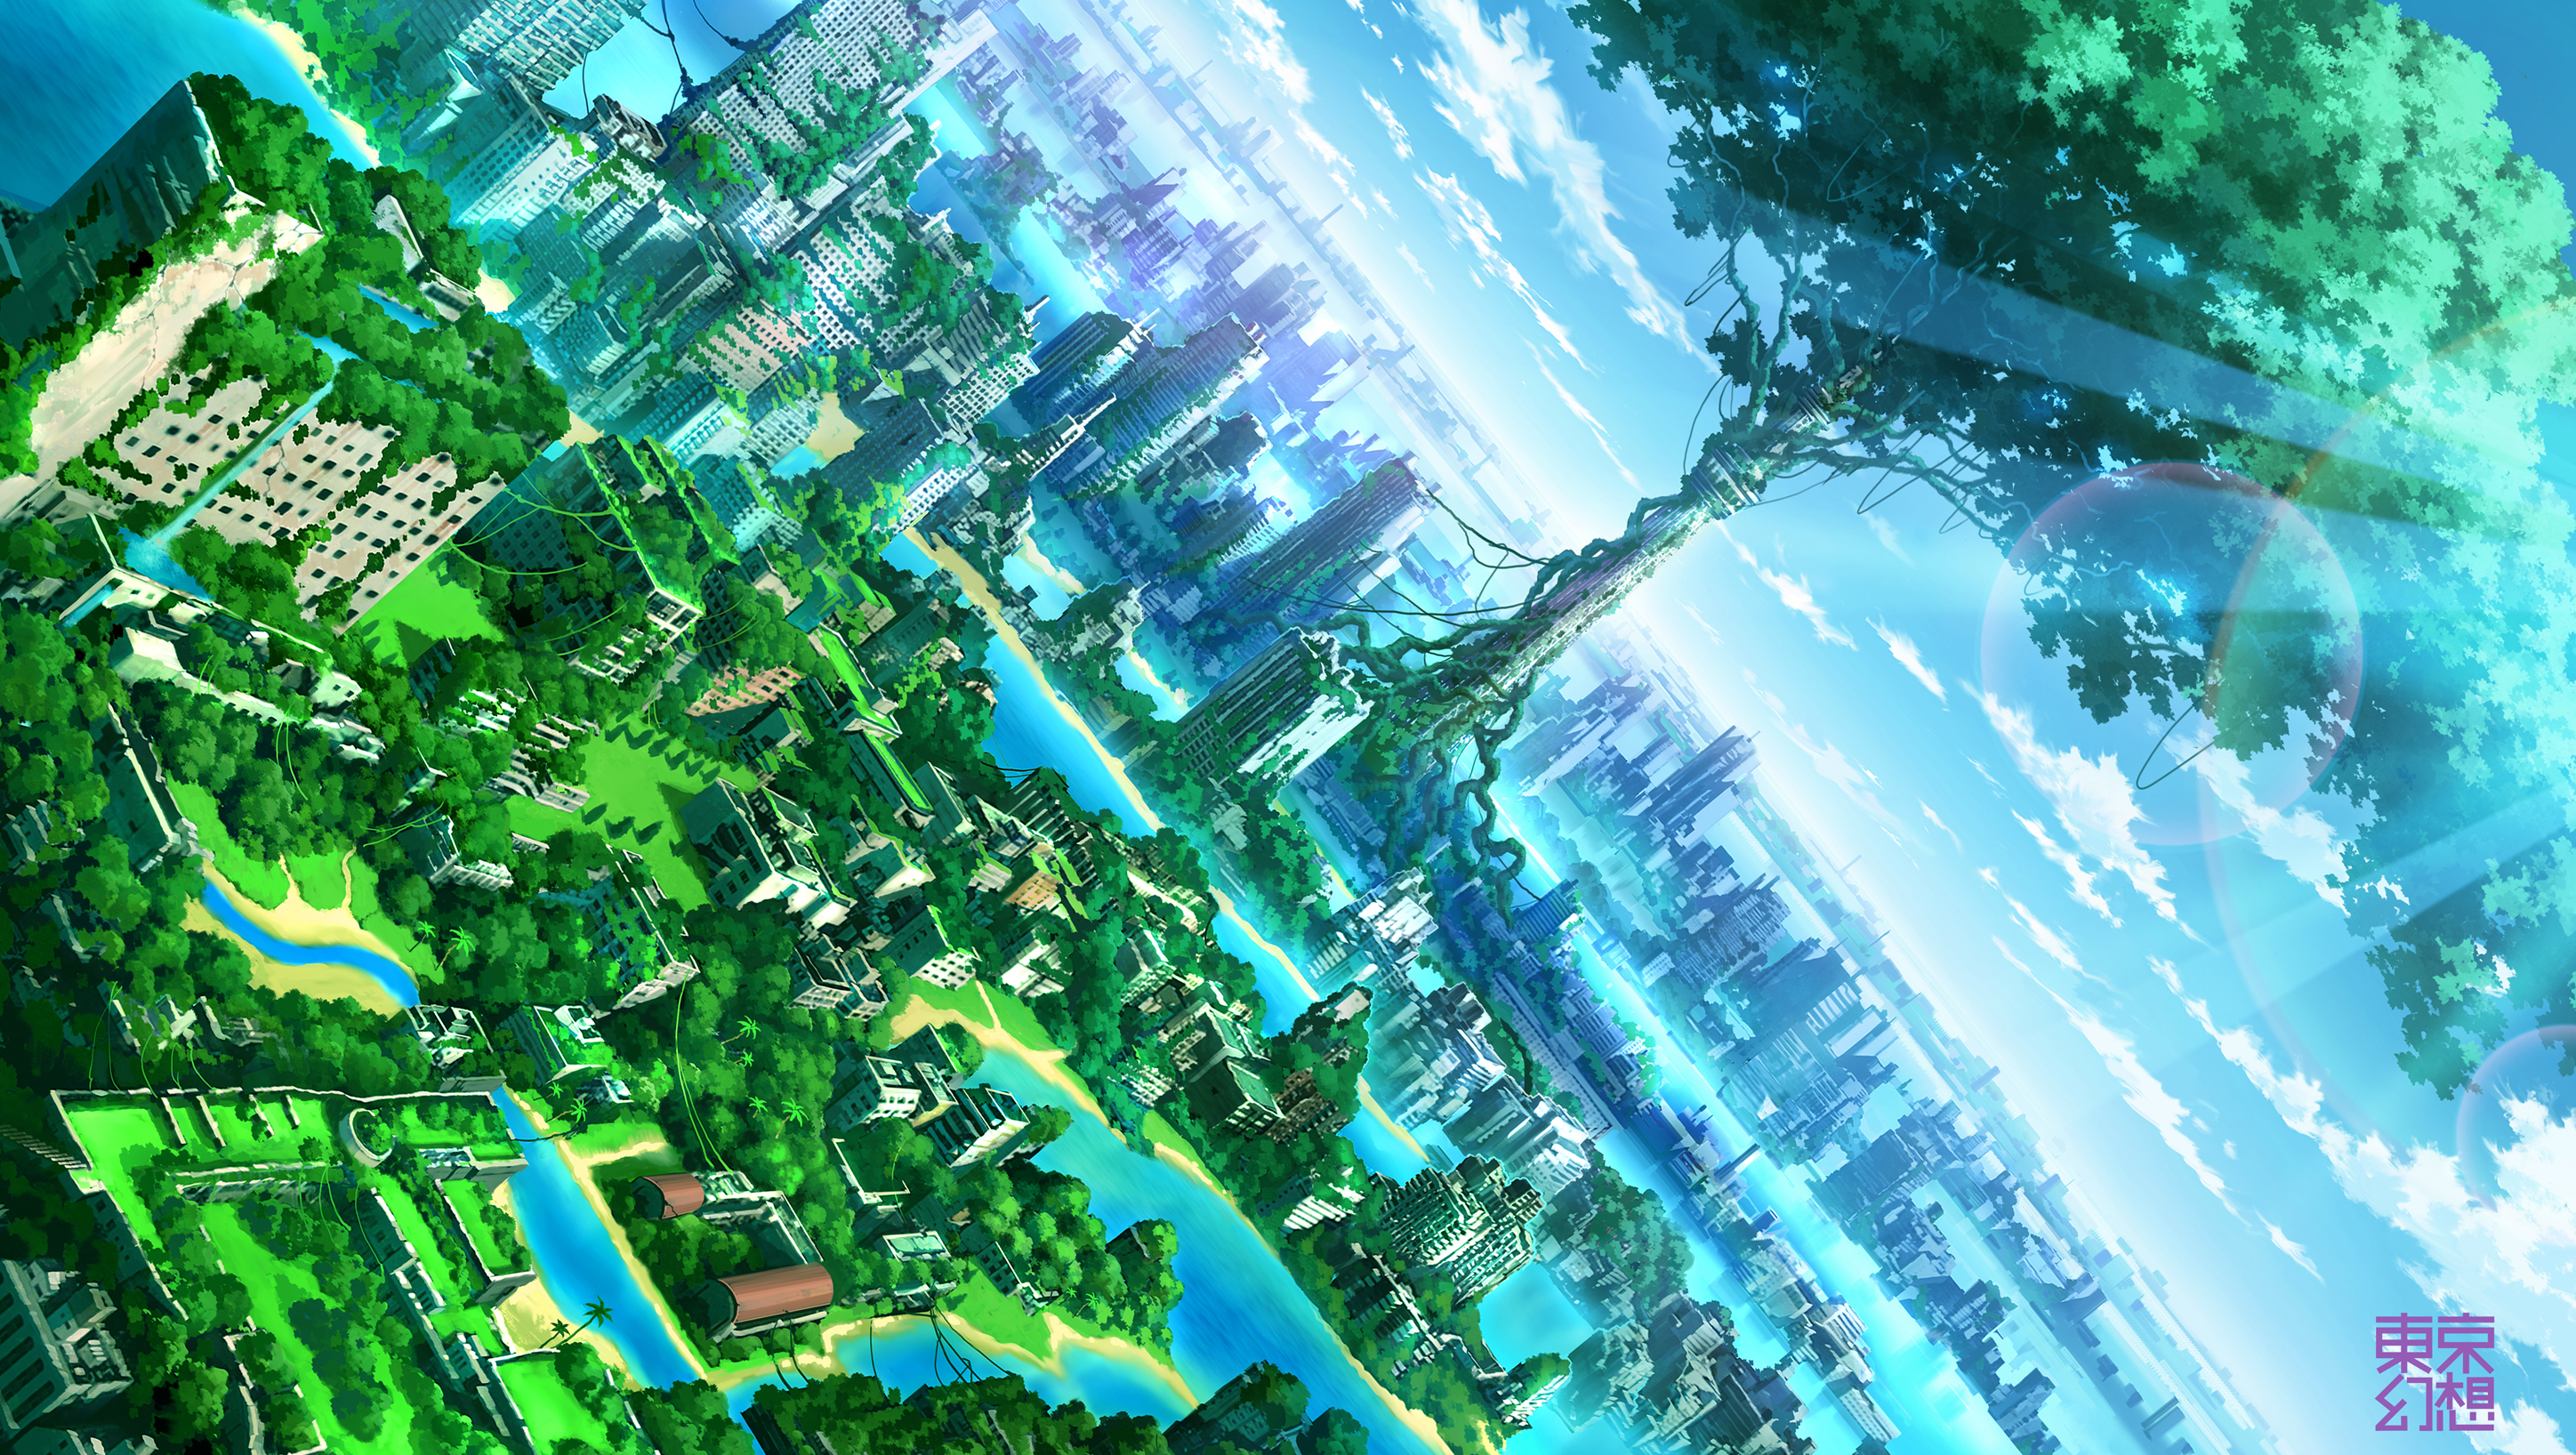 big_tree_city_green_anime_hd_wallpaper_1582020_by_mioch-d95r0ng.jpg